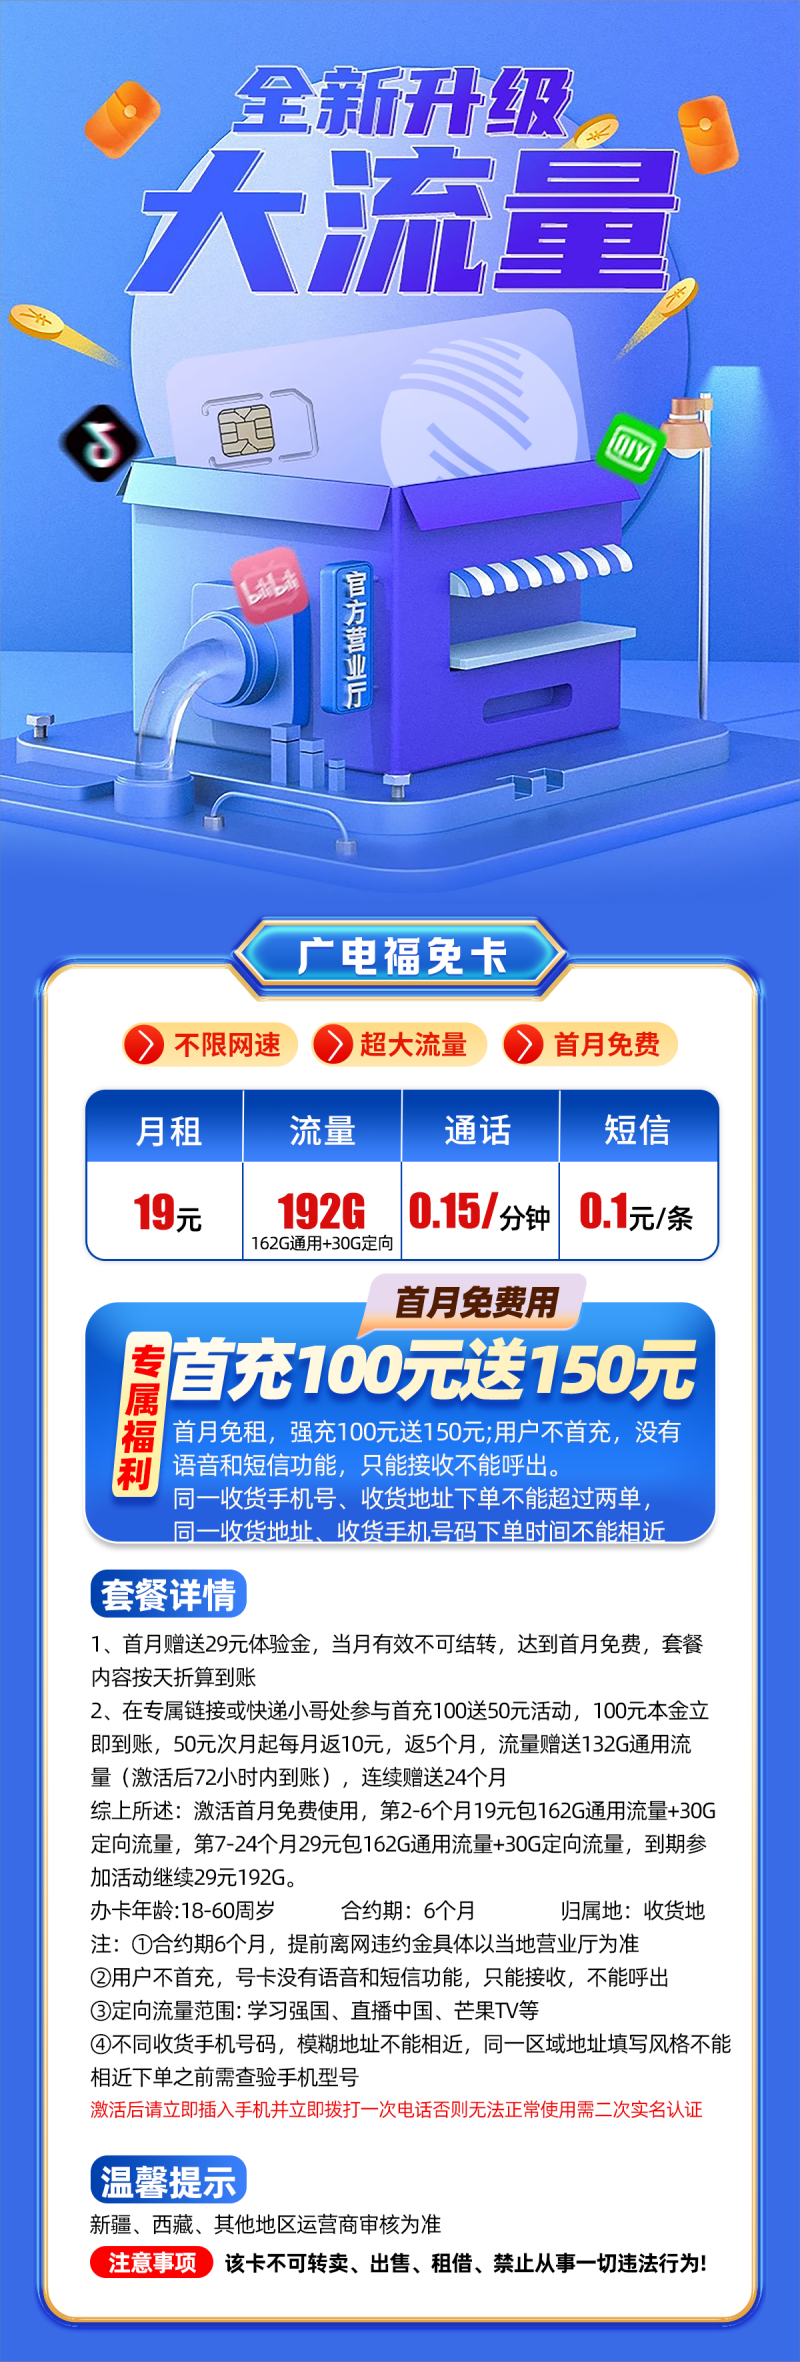 广电福兔卡19元162G通用+30G定向通话0.15元/分钟